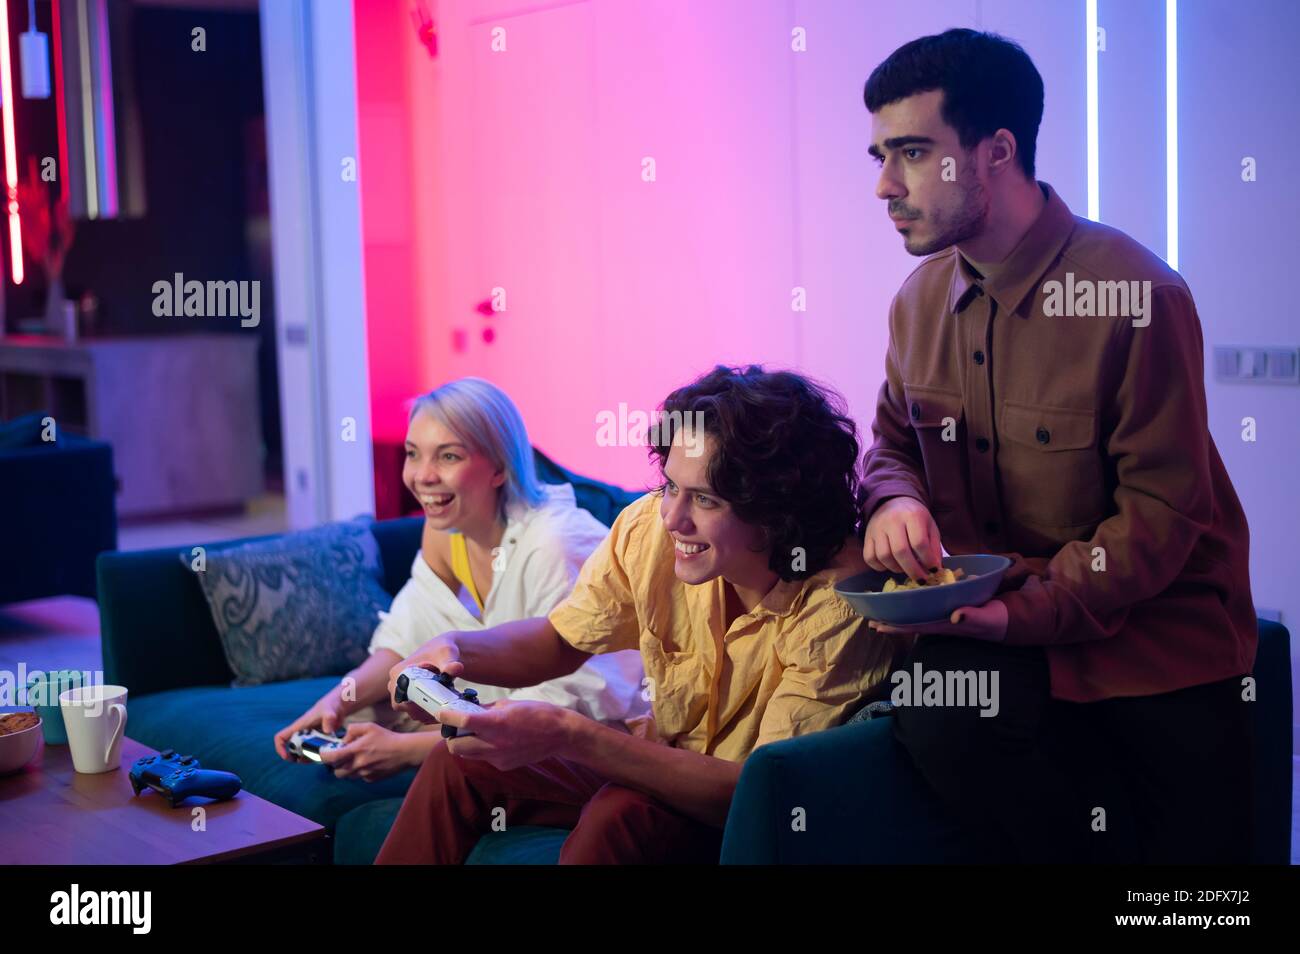 Zwei männliche Freunde aufgeregt, Videospiele zu Hause zu spielen, während ein Mädchen mit ihnen auf einer Couch und mit Handy-Smartphone sitzen. Stockfoto